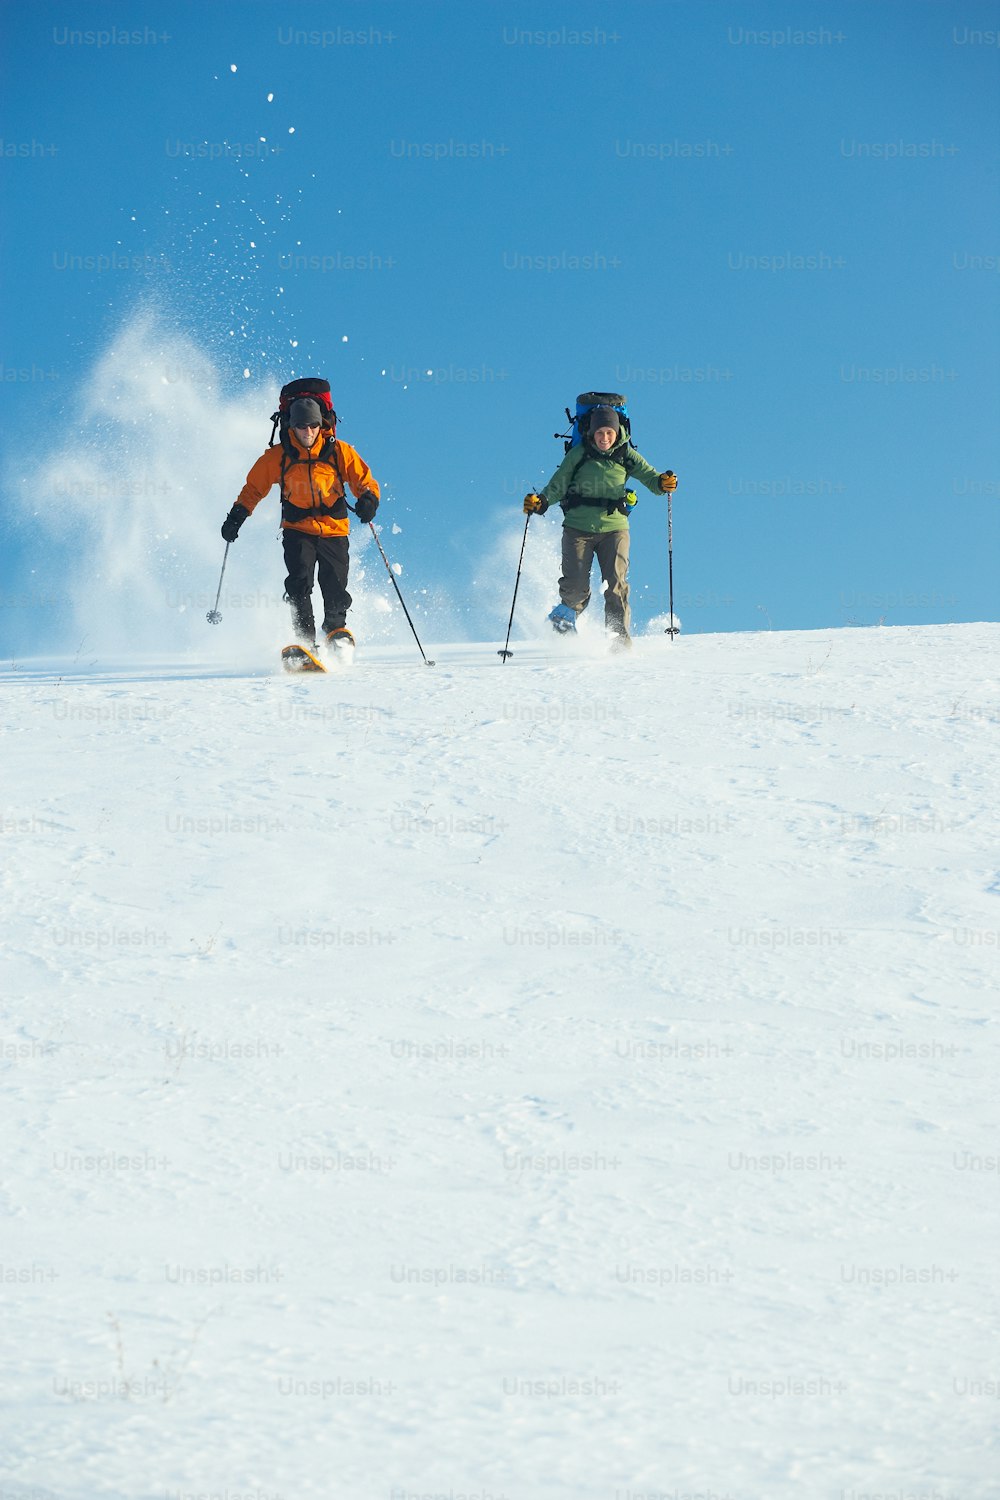 눈 덮인 슬로프를 따라 스키를 타는 두 사람